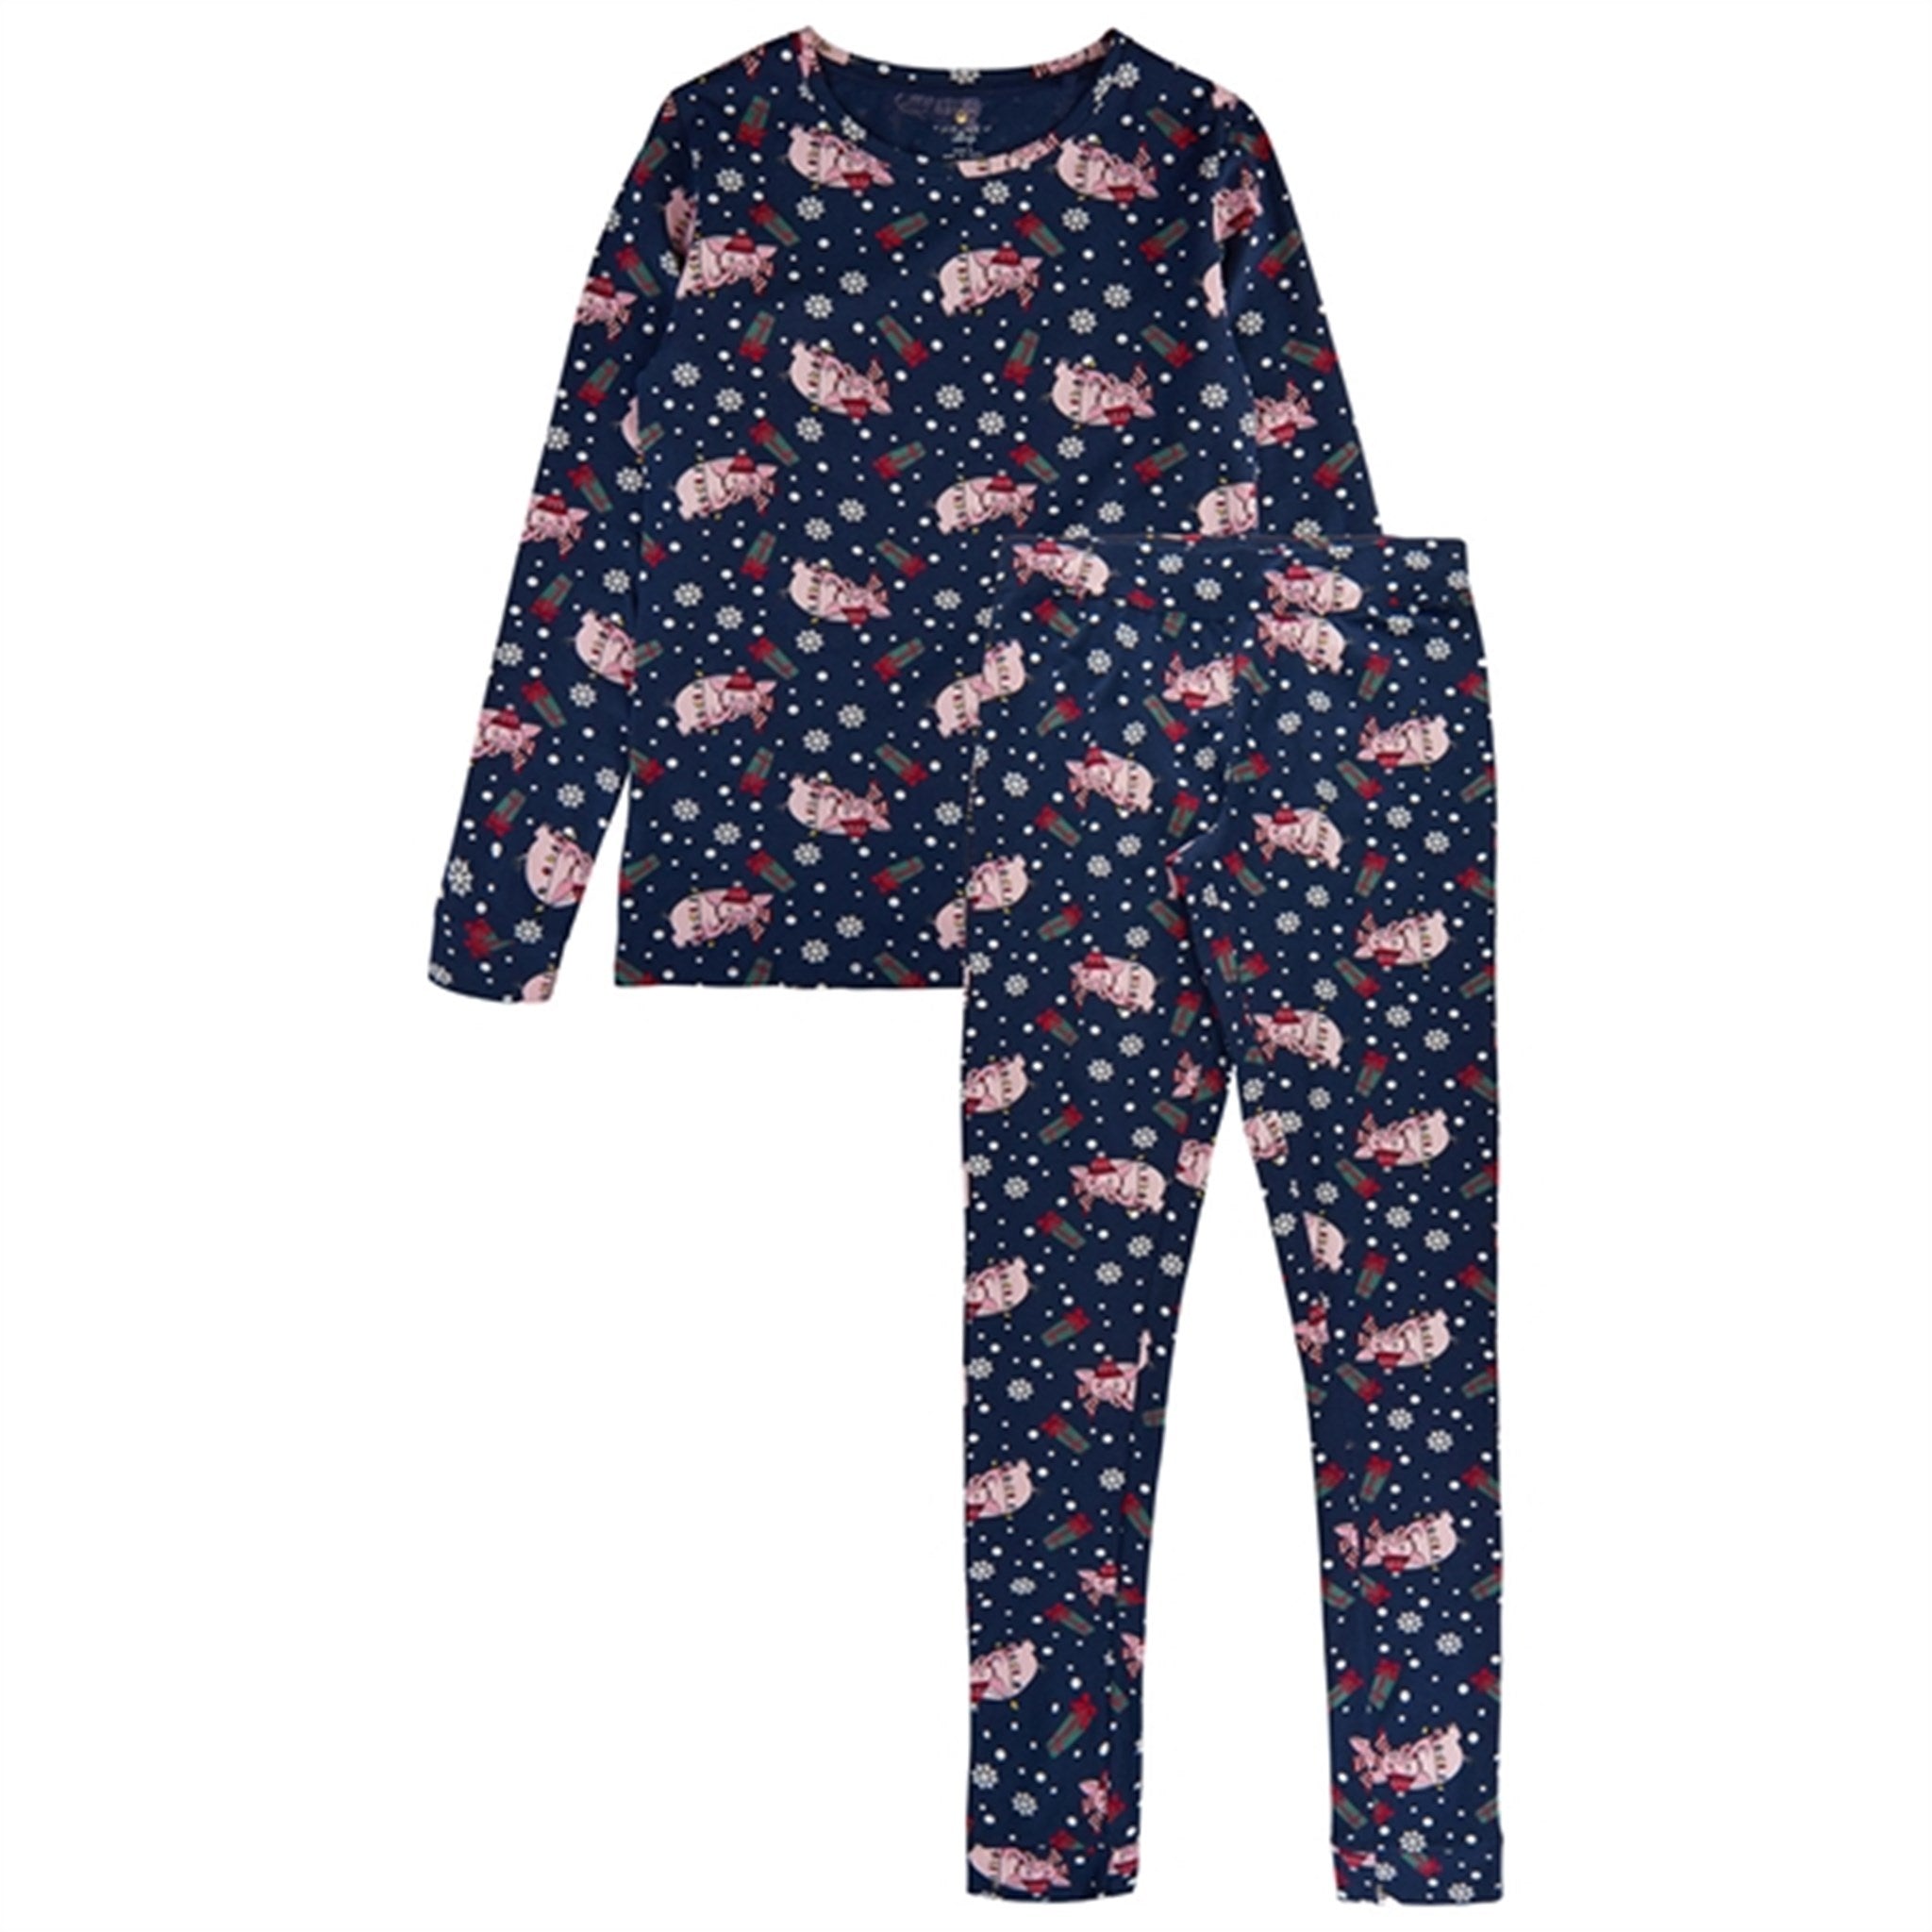 The New Navy Blazer Holiday Pyjamas Voksen